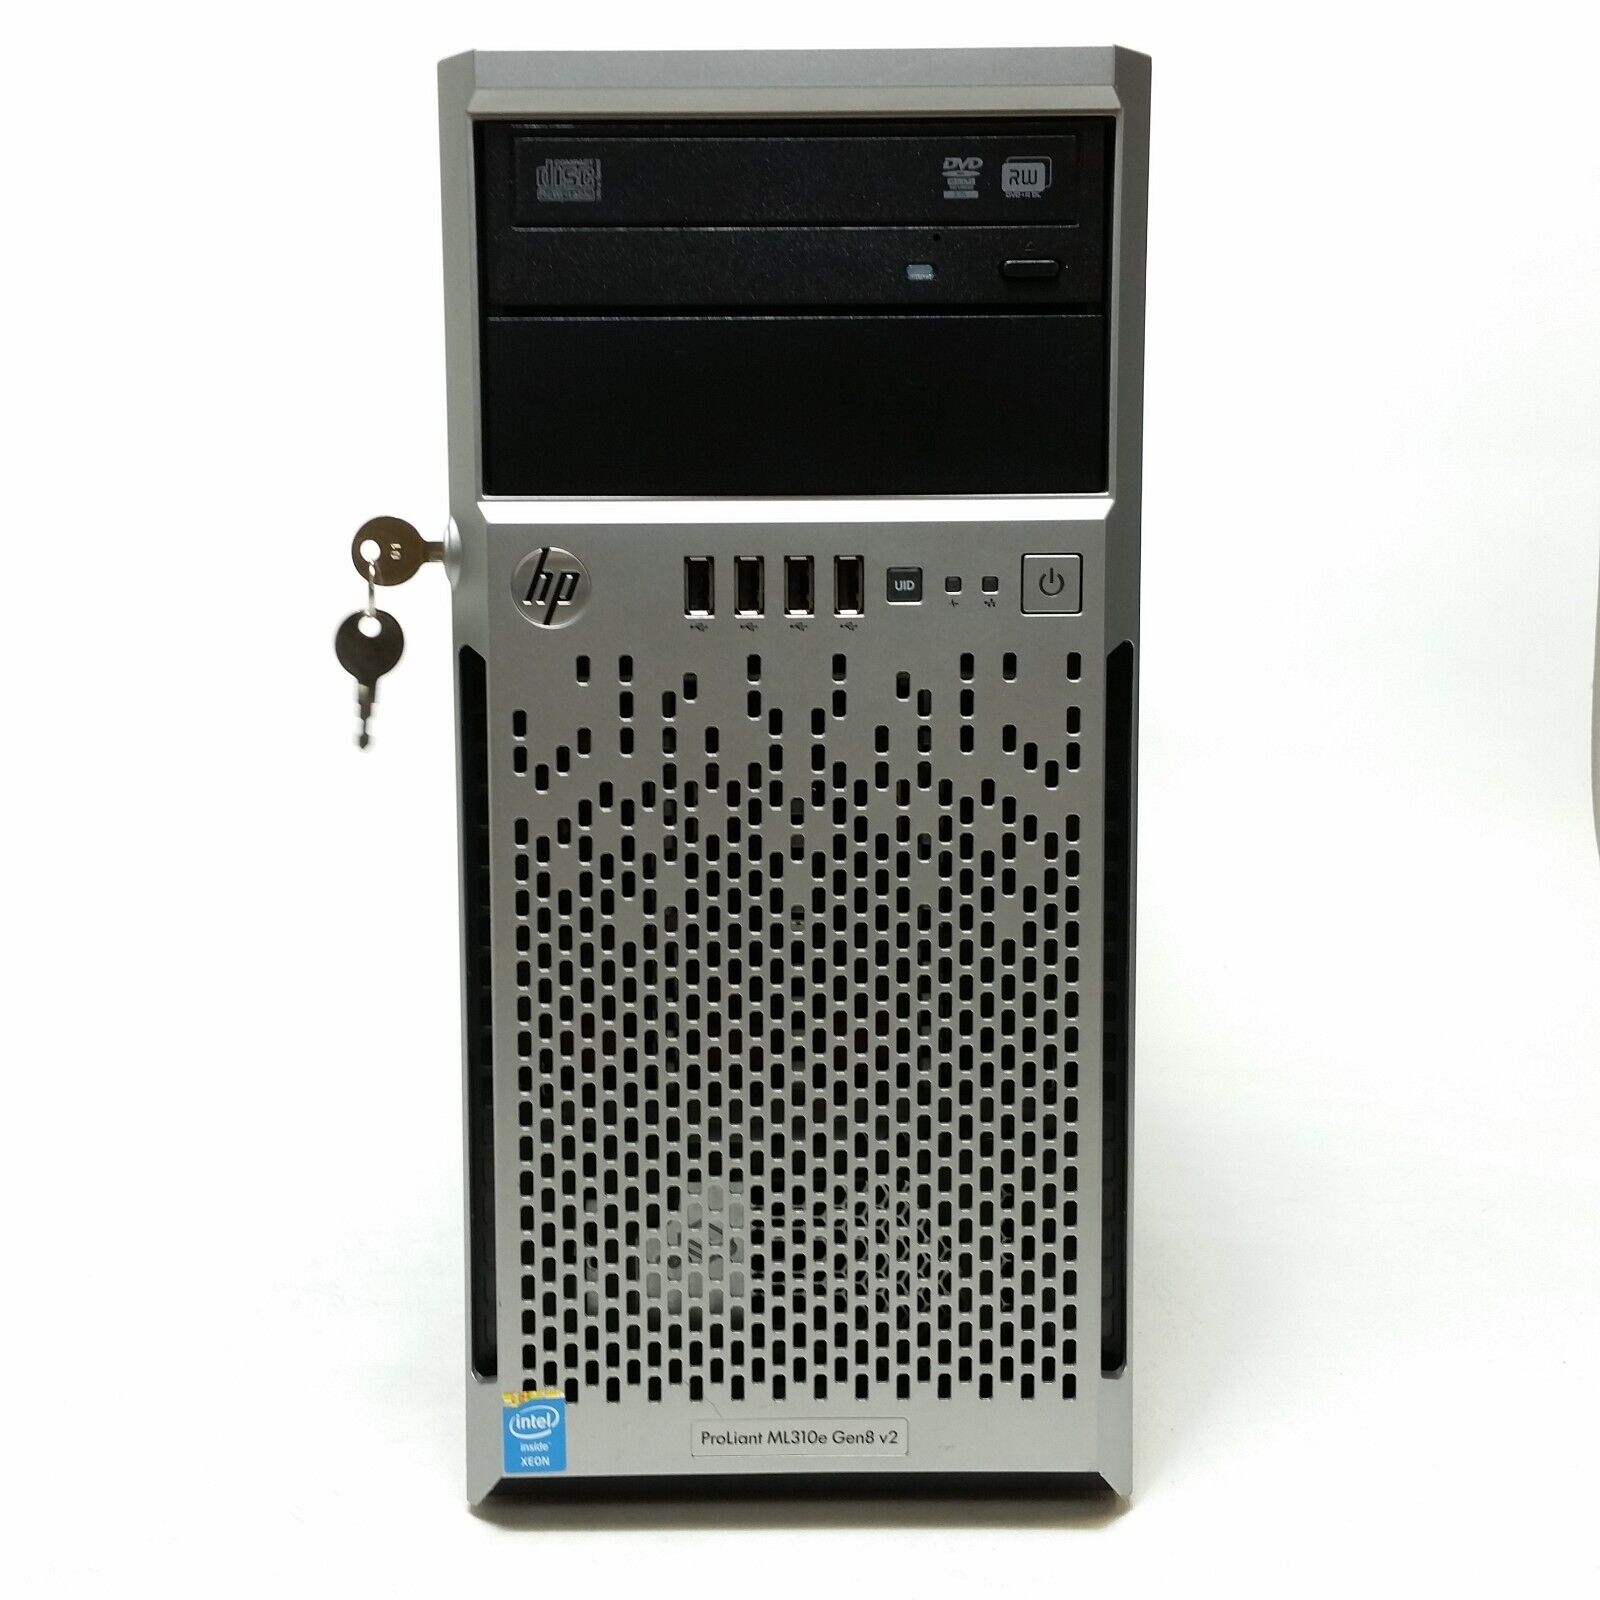 HP ML310e Gen8 v2 Xeon E3-1230 3.3GHz Tower Server *No HDD